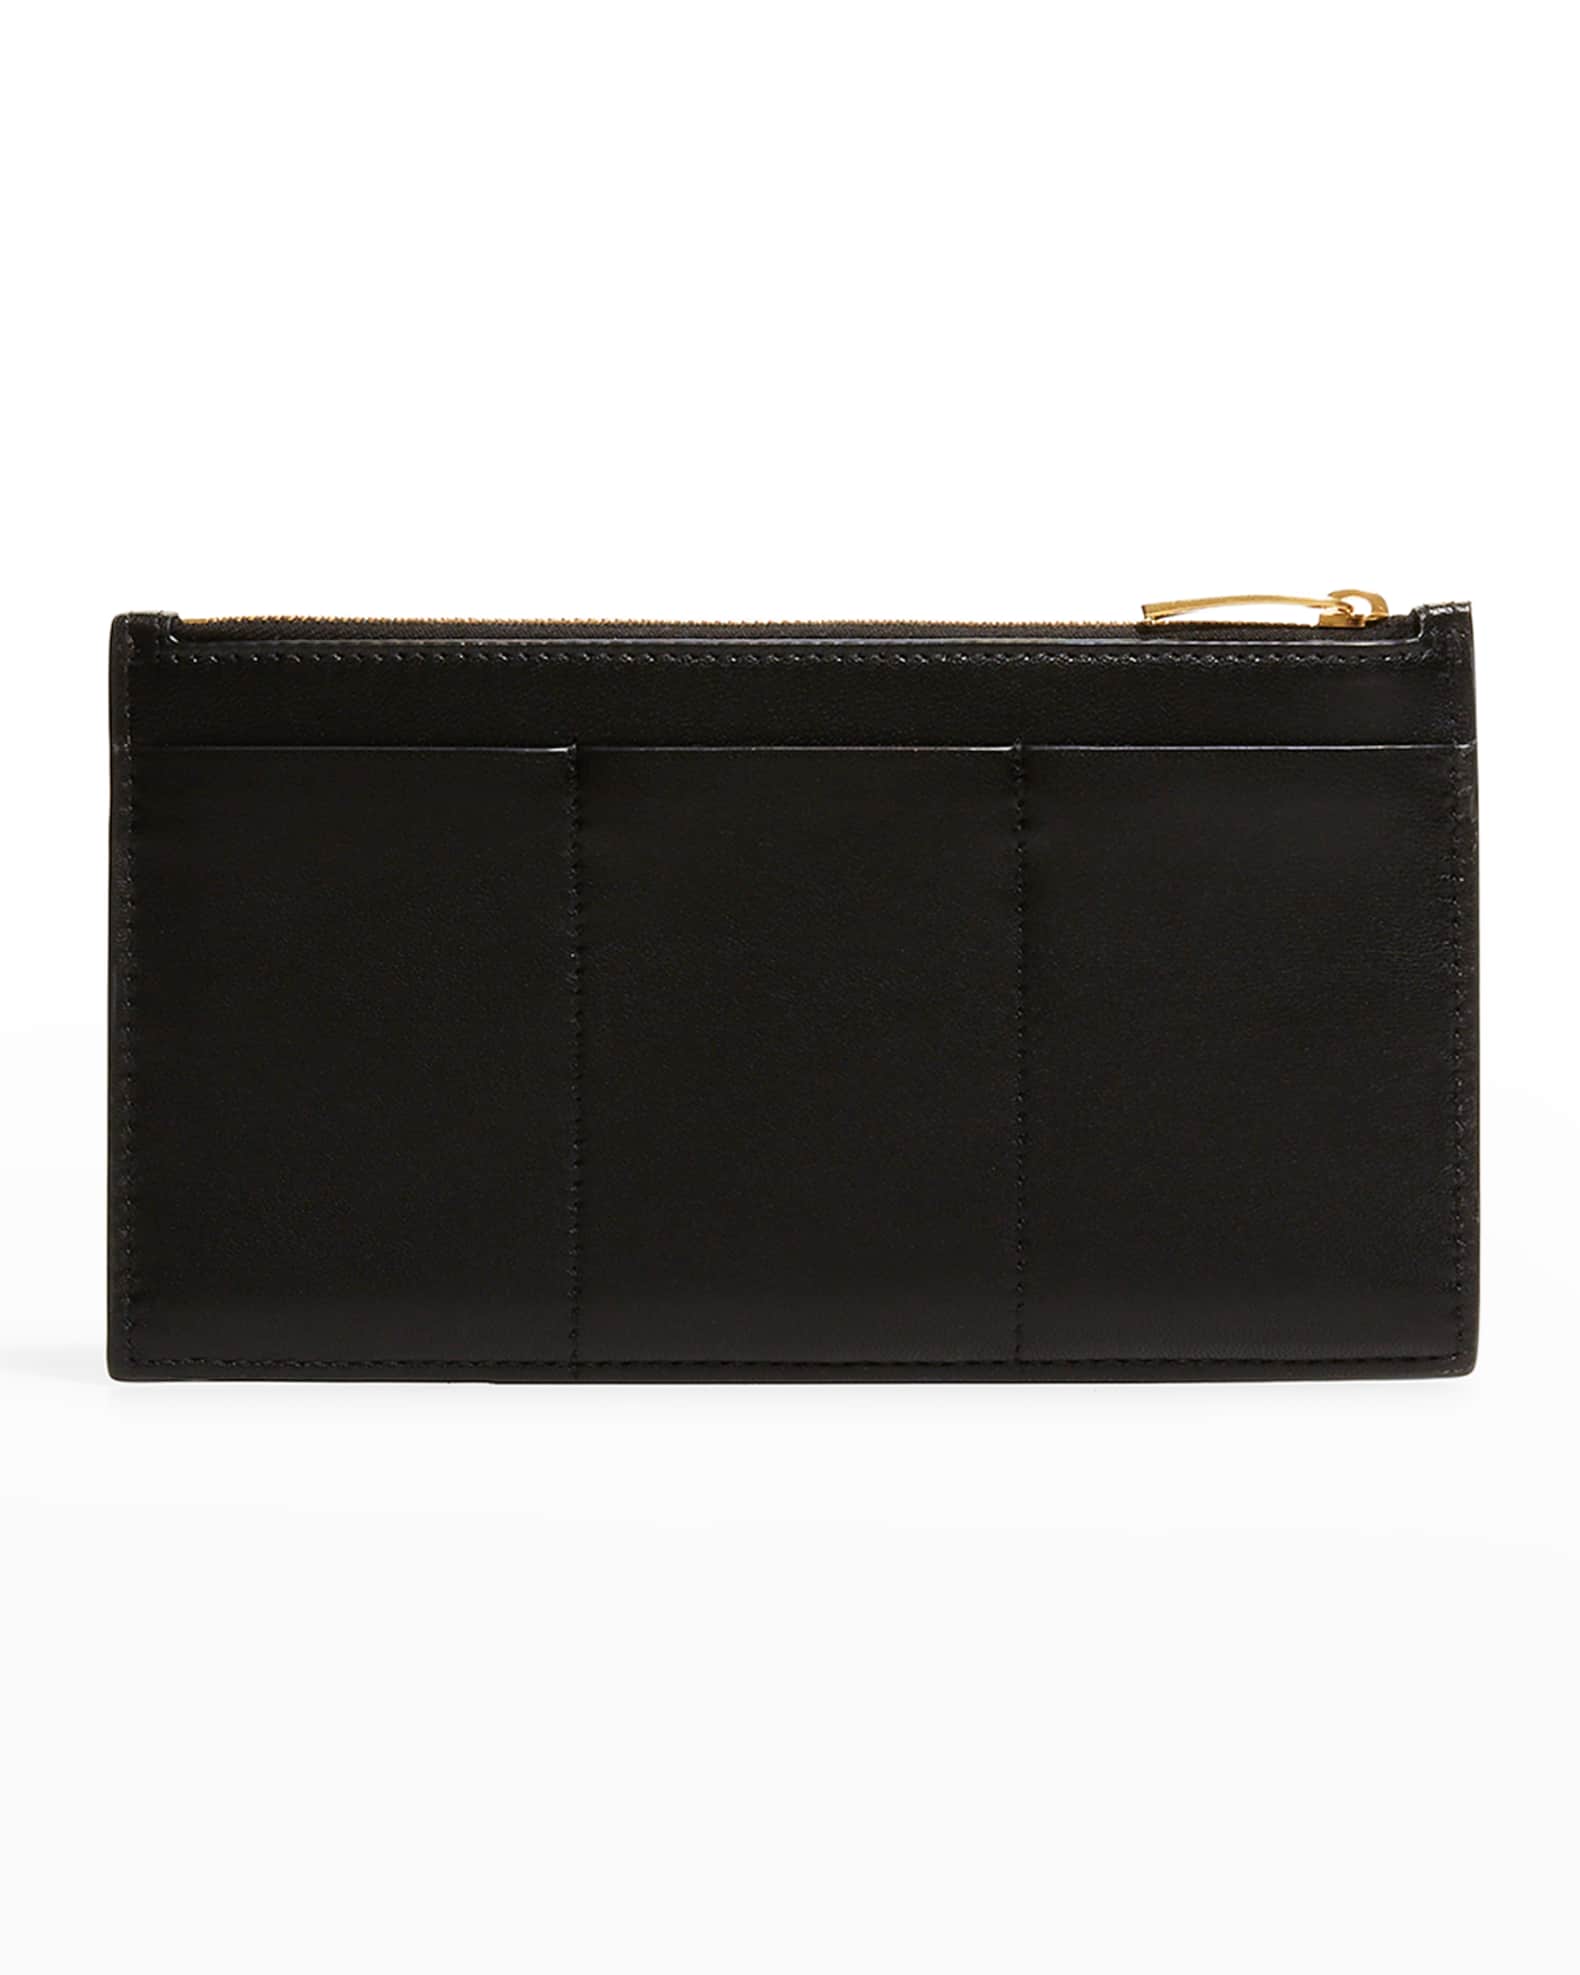 Bottega Veneta Woven Leather Zip Card Case | Neiman Marcus